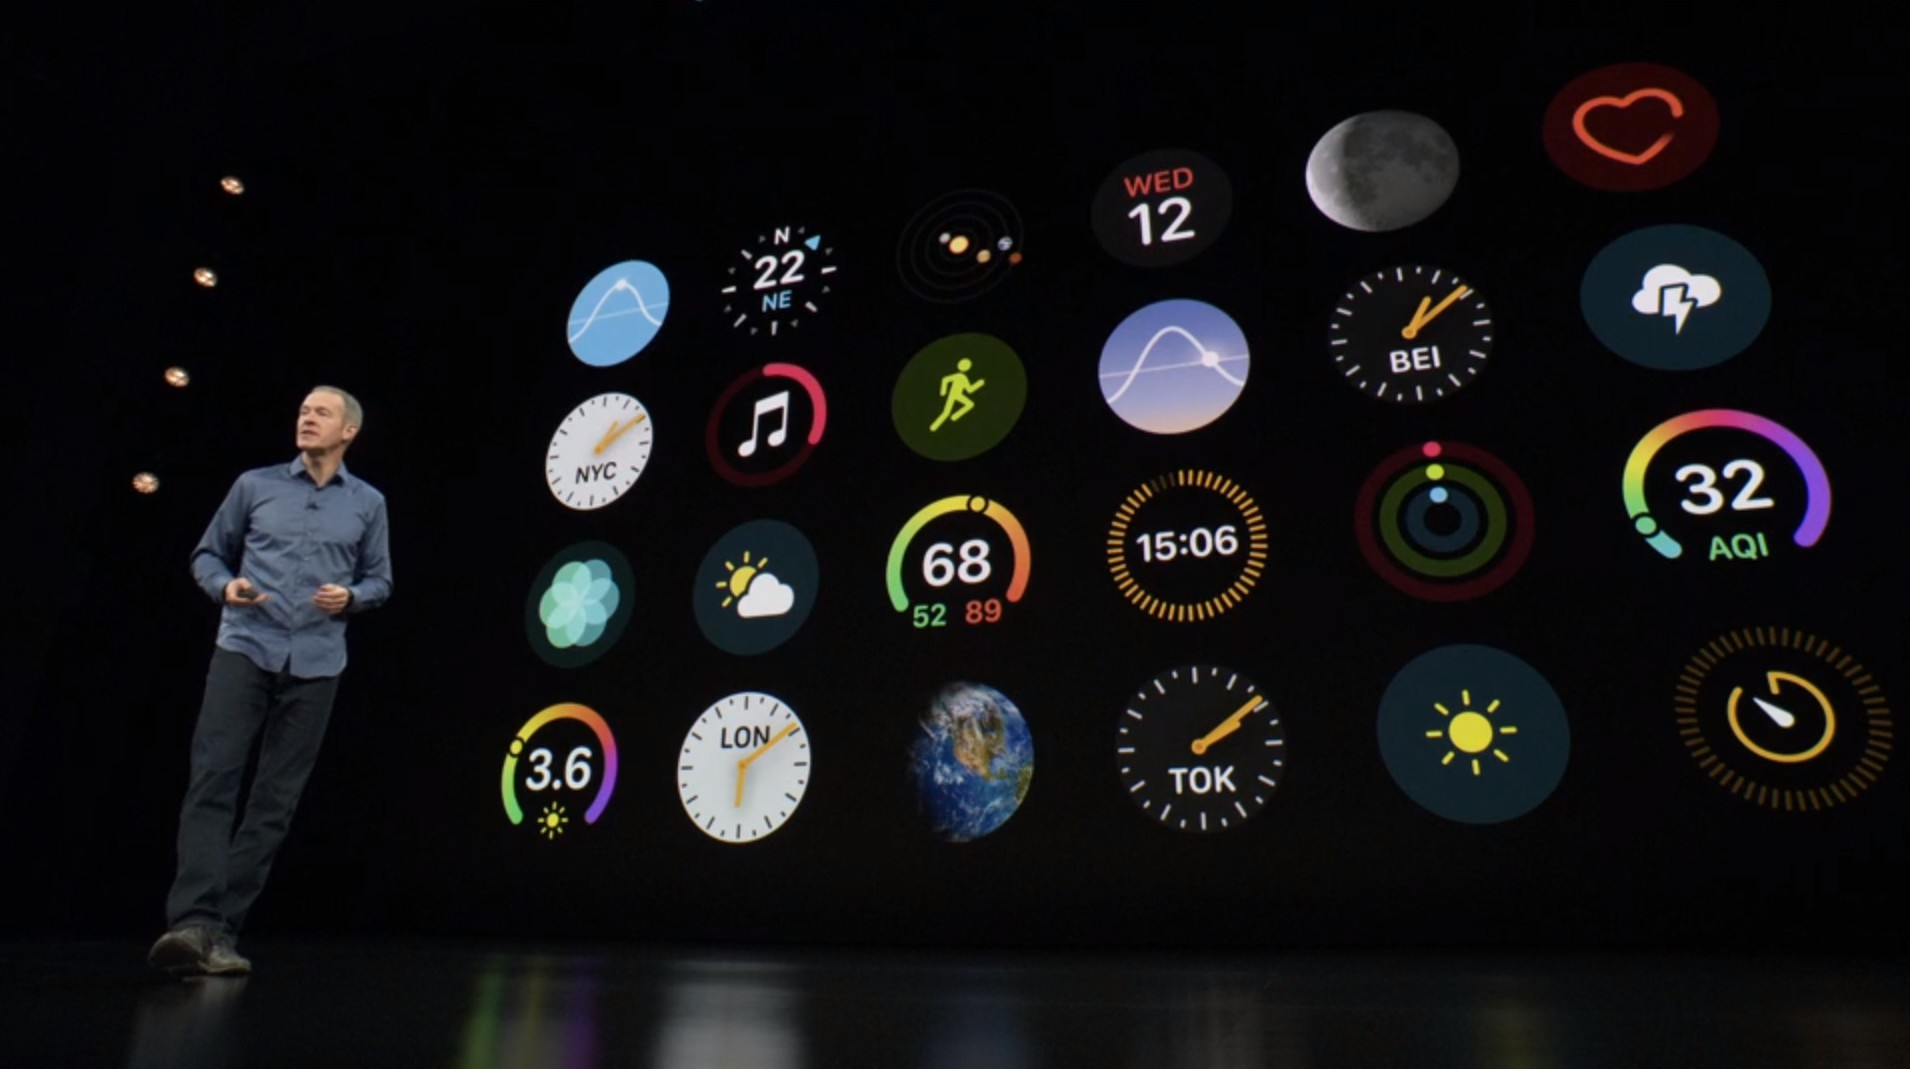 Το νέο Apple Watch Series 4 έχει μια πολύ πιο κομψή οθόνη που εκτείνεται από άκρη σε άκρη 5